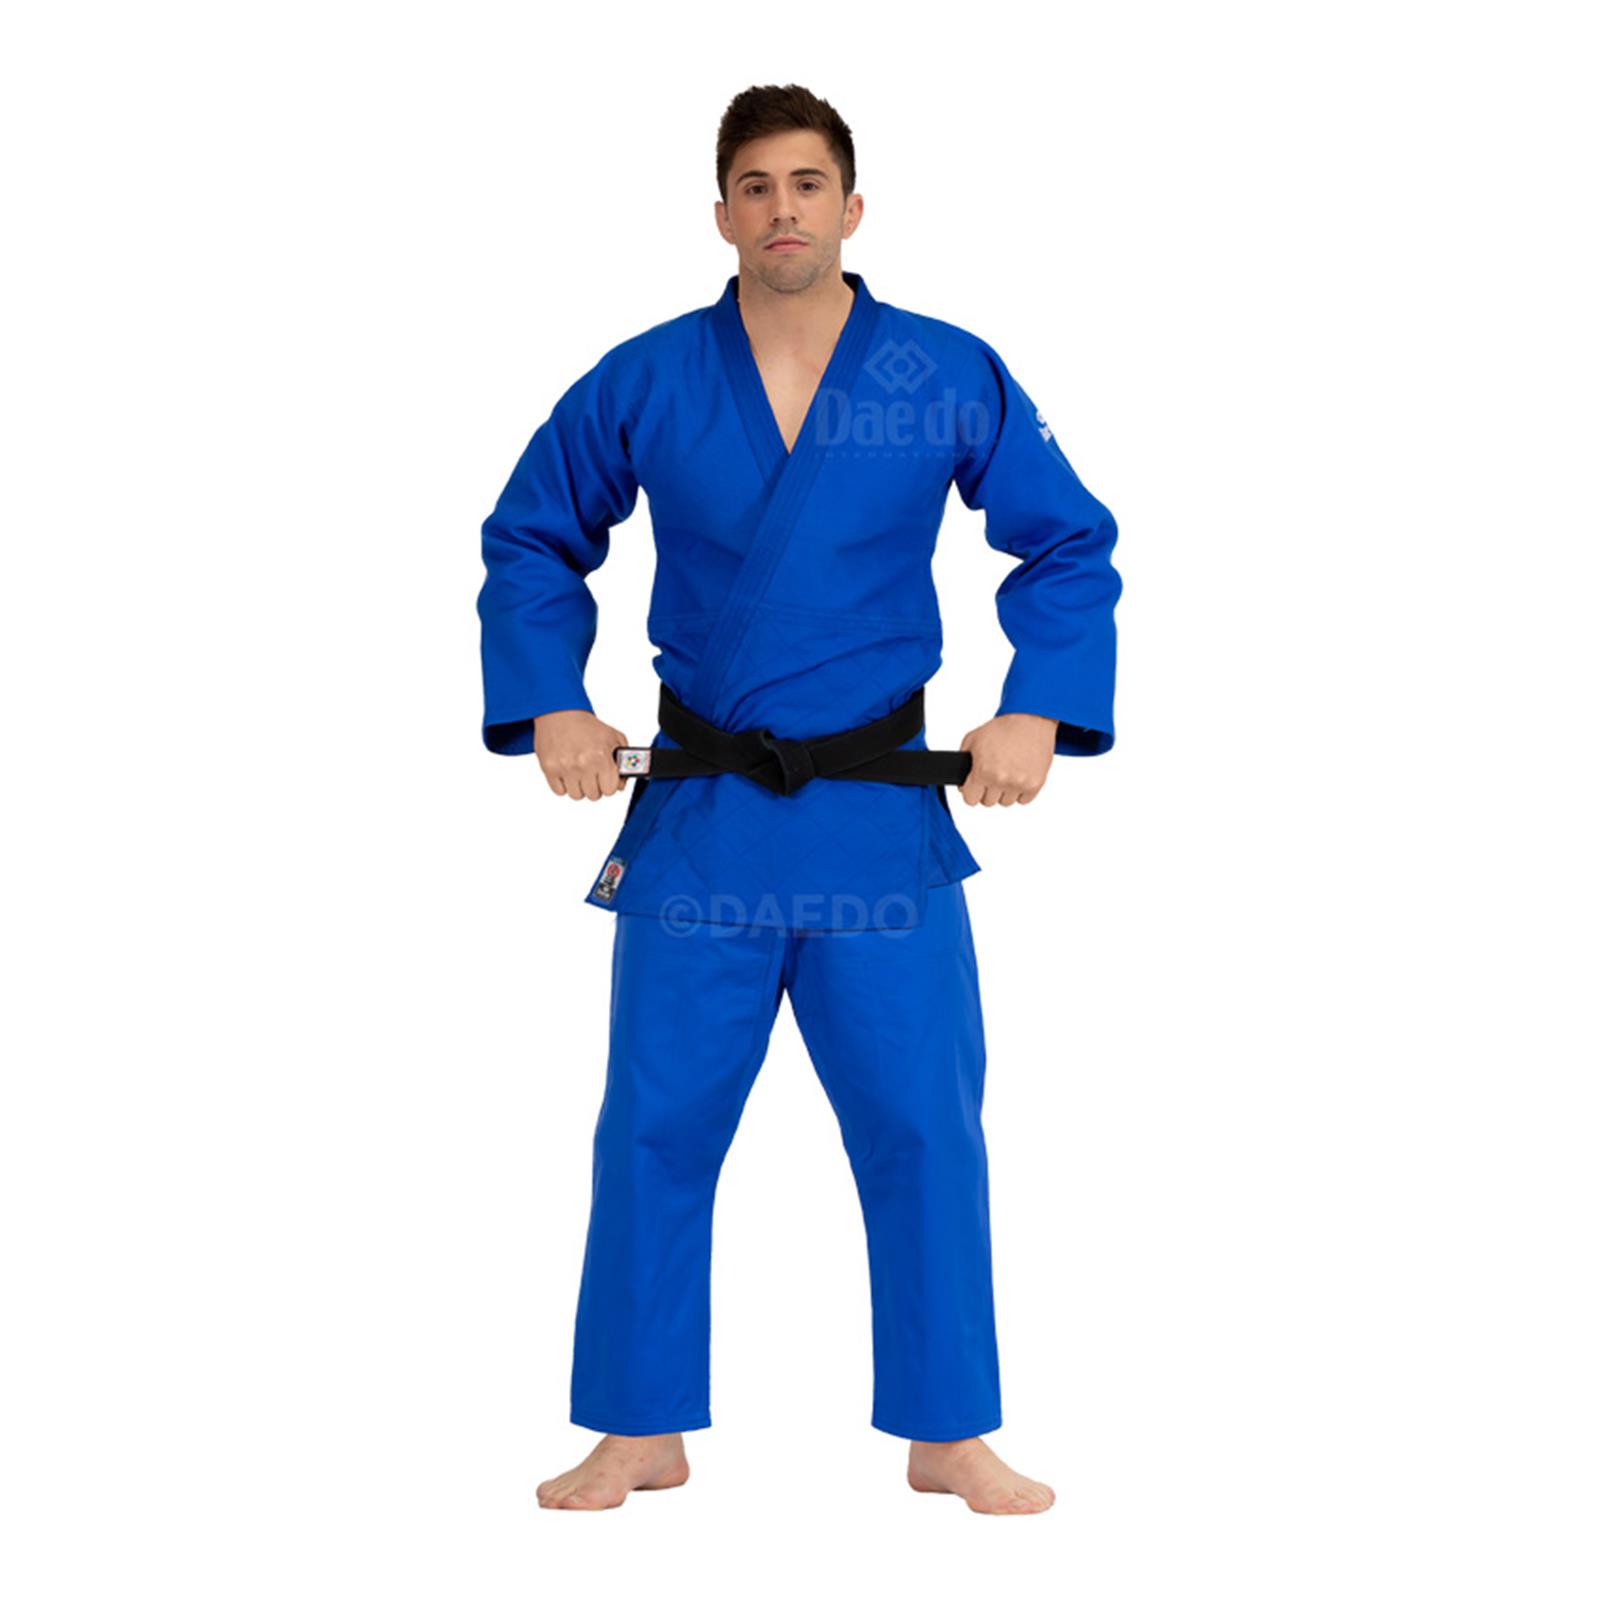 Dae Do Judogi da Competizione Elite az (3.5° - 165cm - BLU)